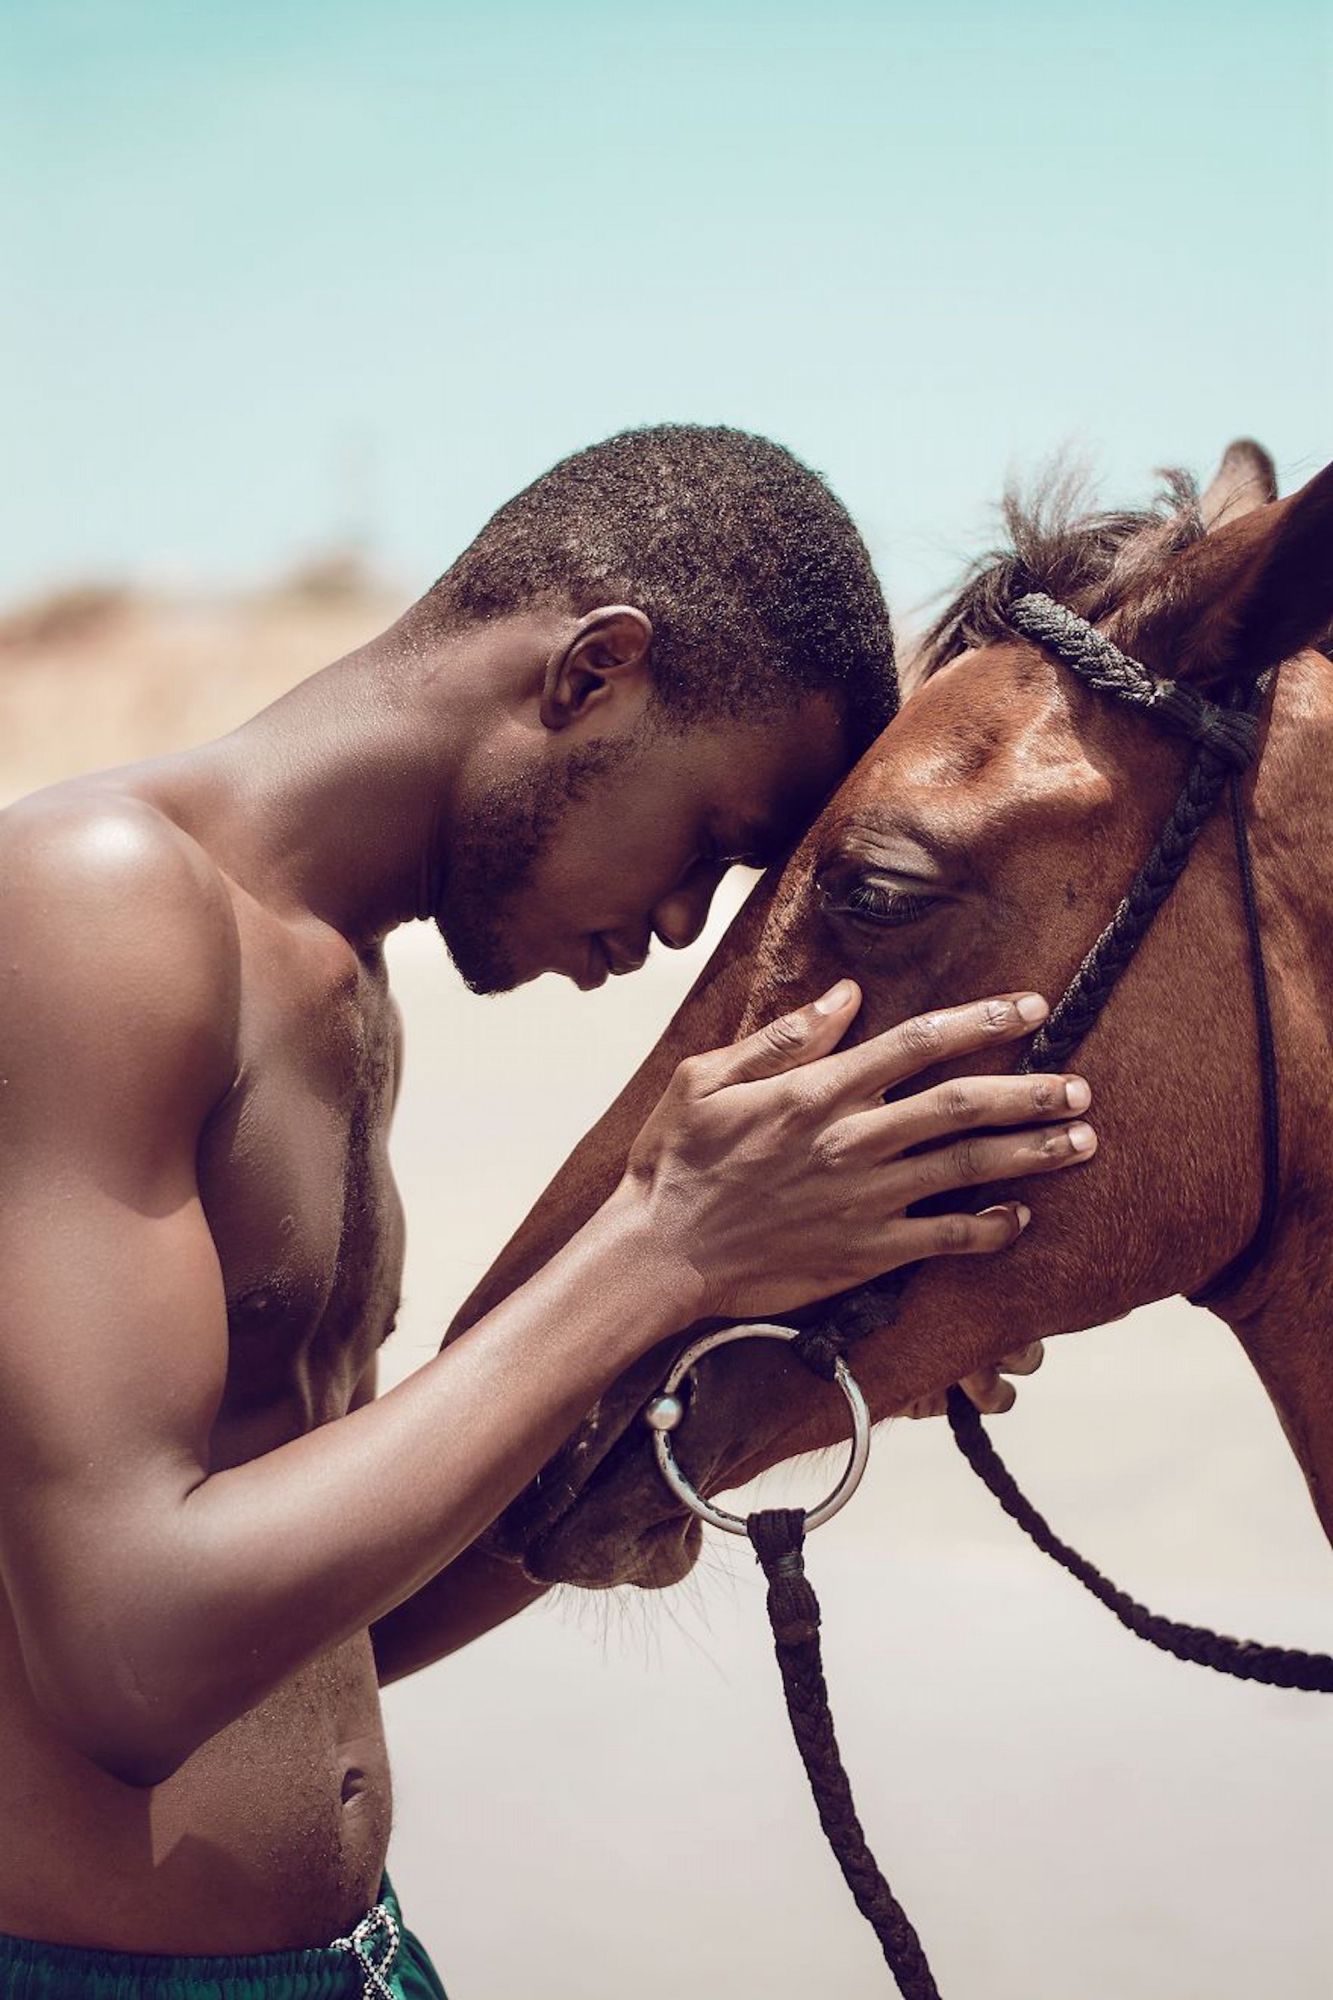  Fotógrafo quer mostrar a cordial relação entre um homem e um animal